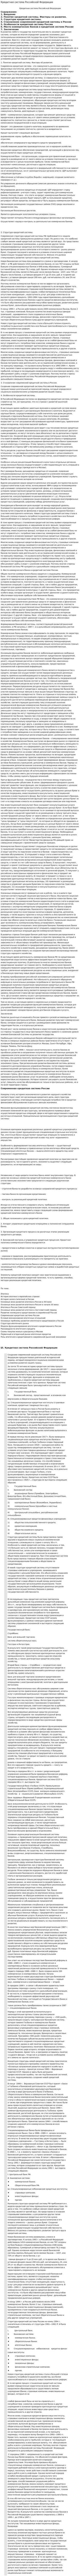 Кредитная система Российской Федерации. 3